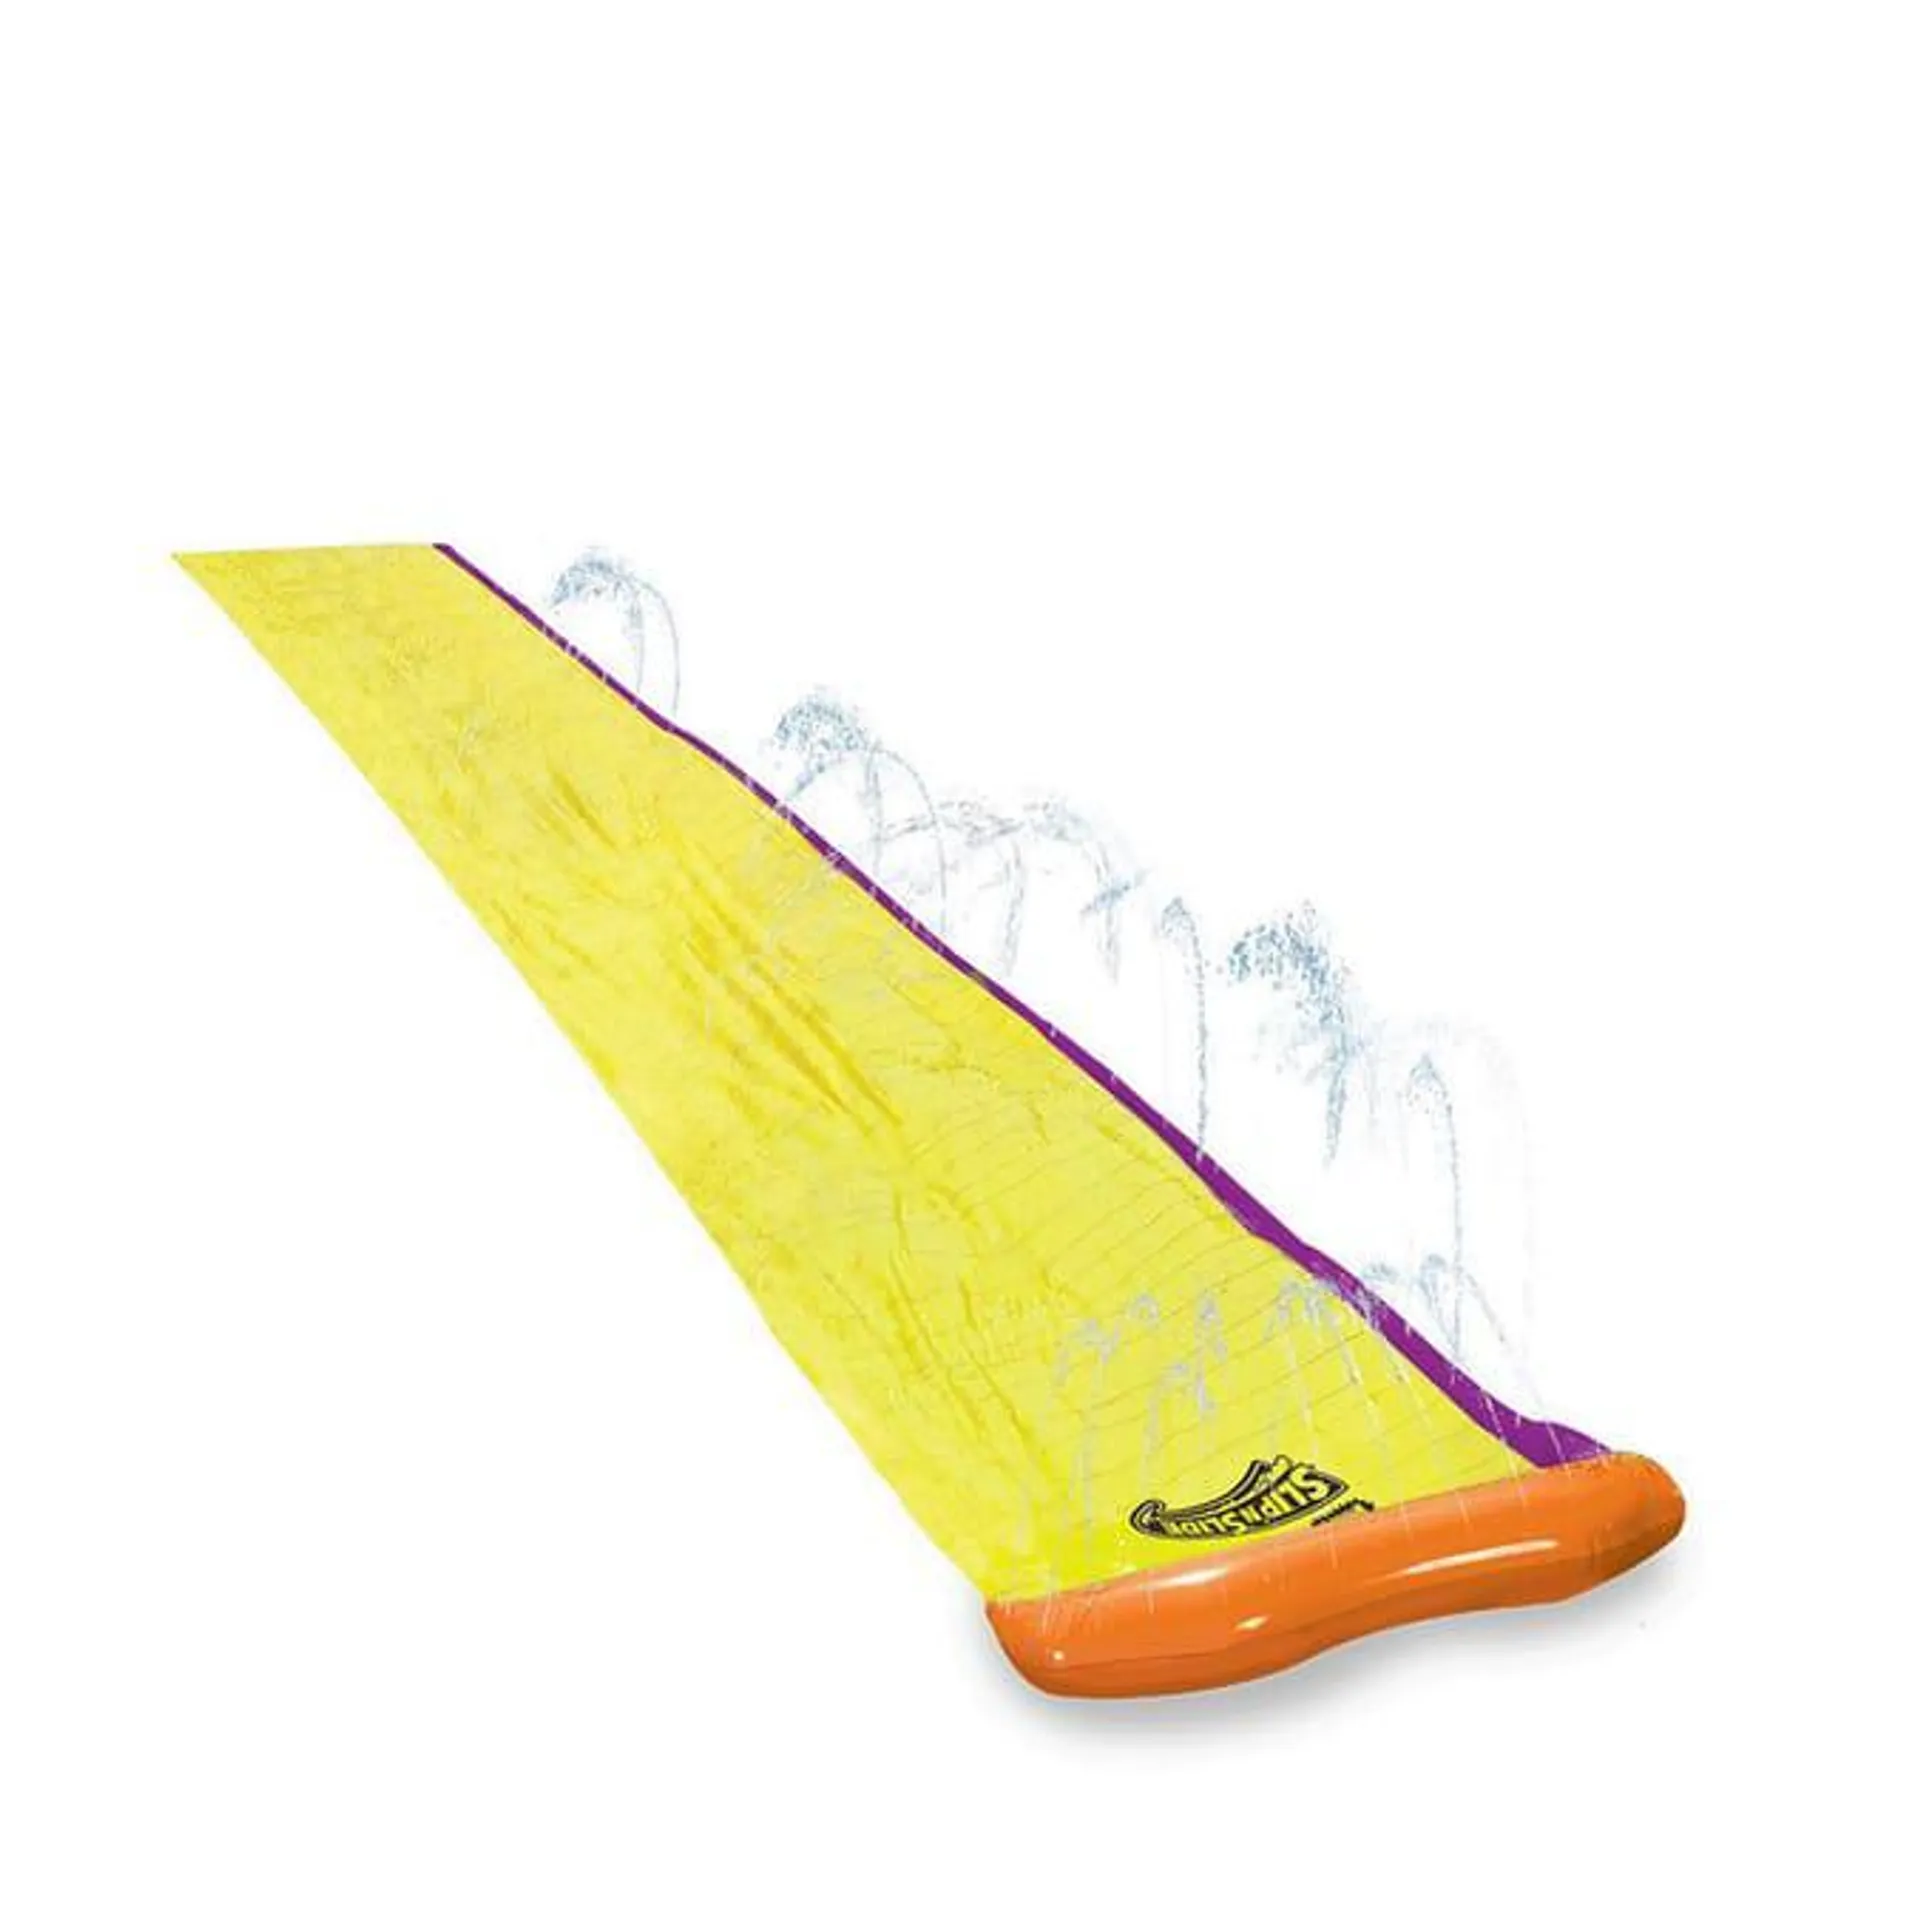 Wham-O Slip'n'Slide Surf Rider Single